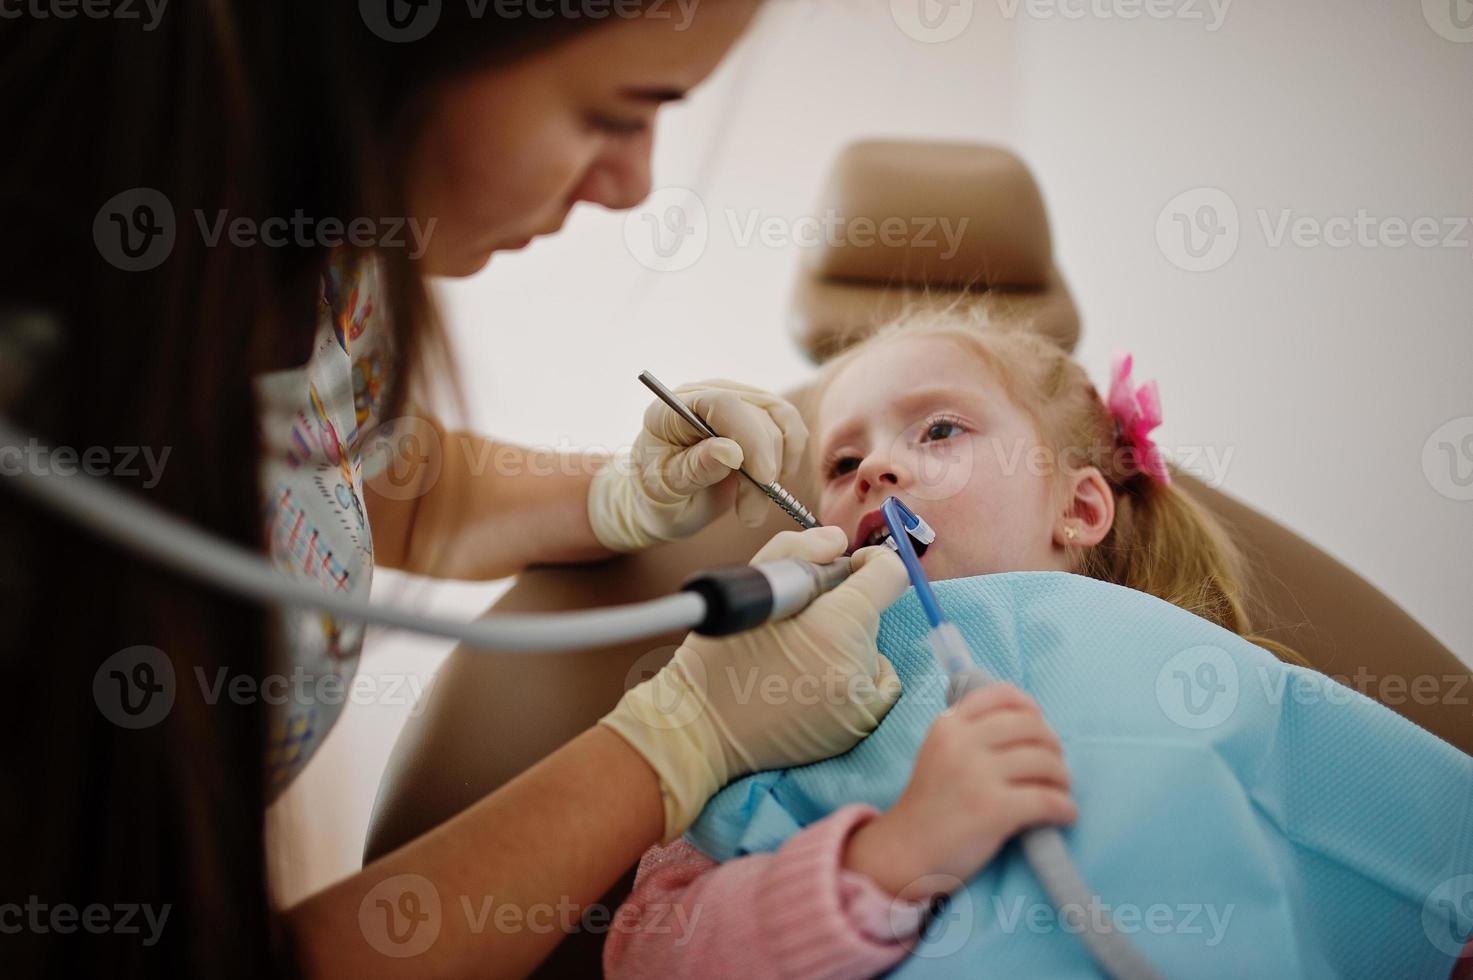 hijita en la silla del dentista. niños dentales. foto